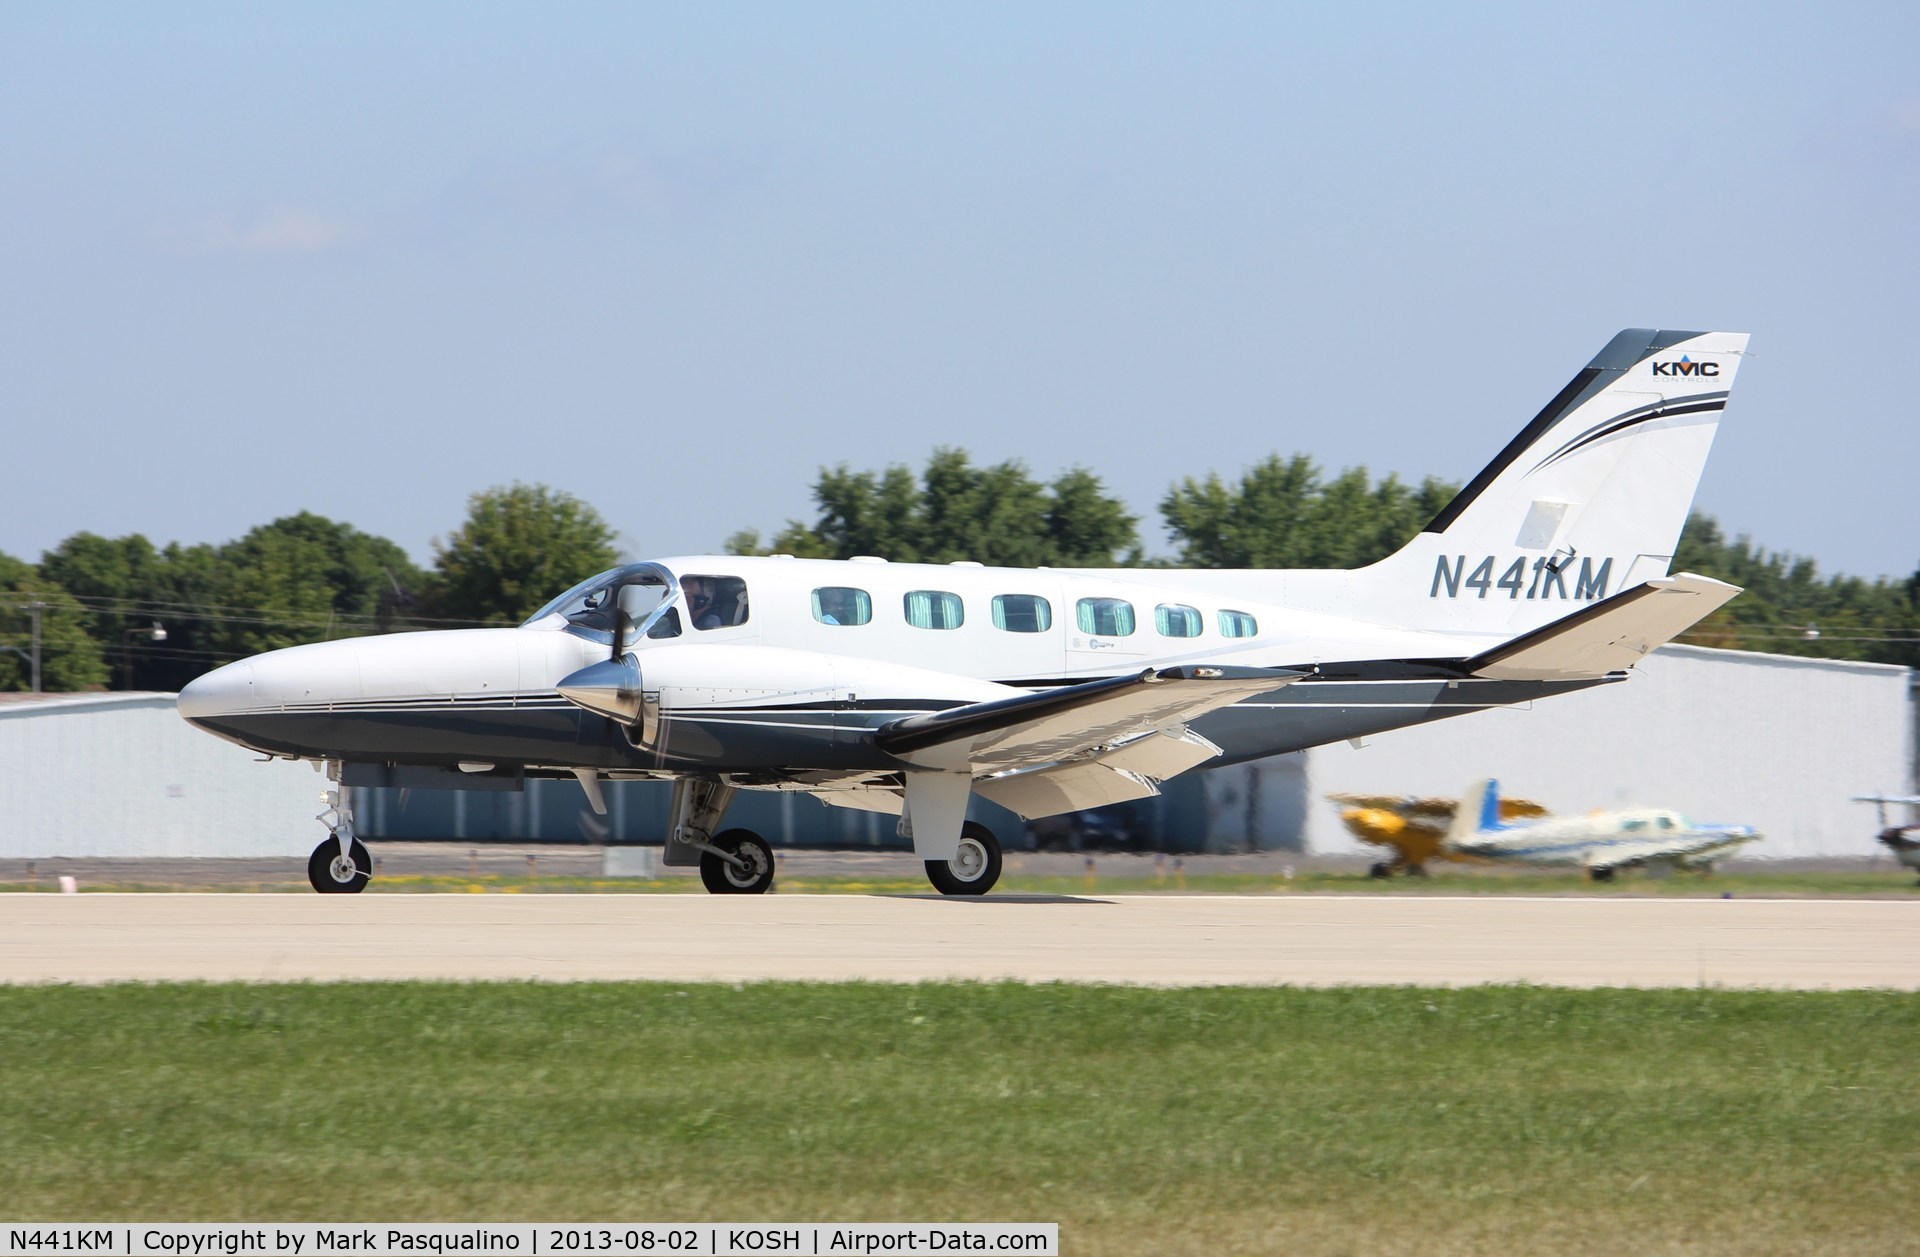 N441KM, Cessna 441 C/N 4410196, Cessna 441